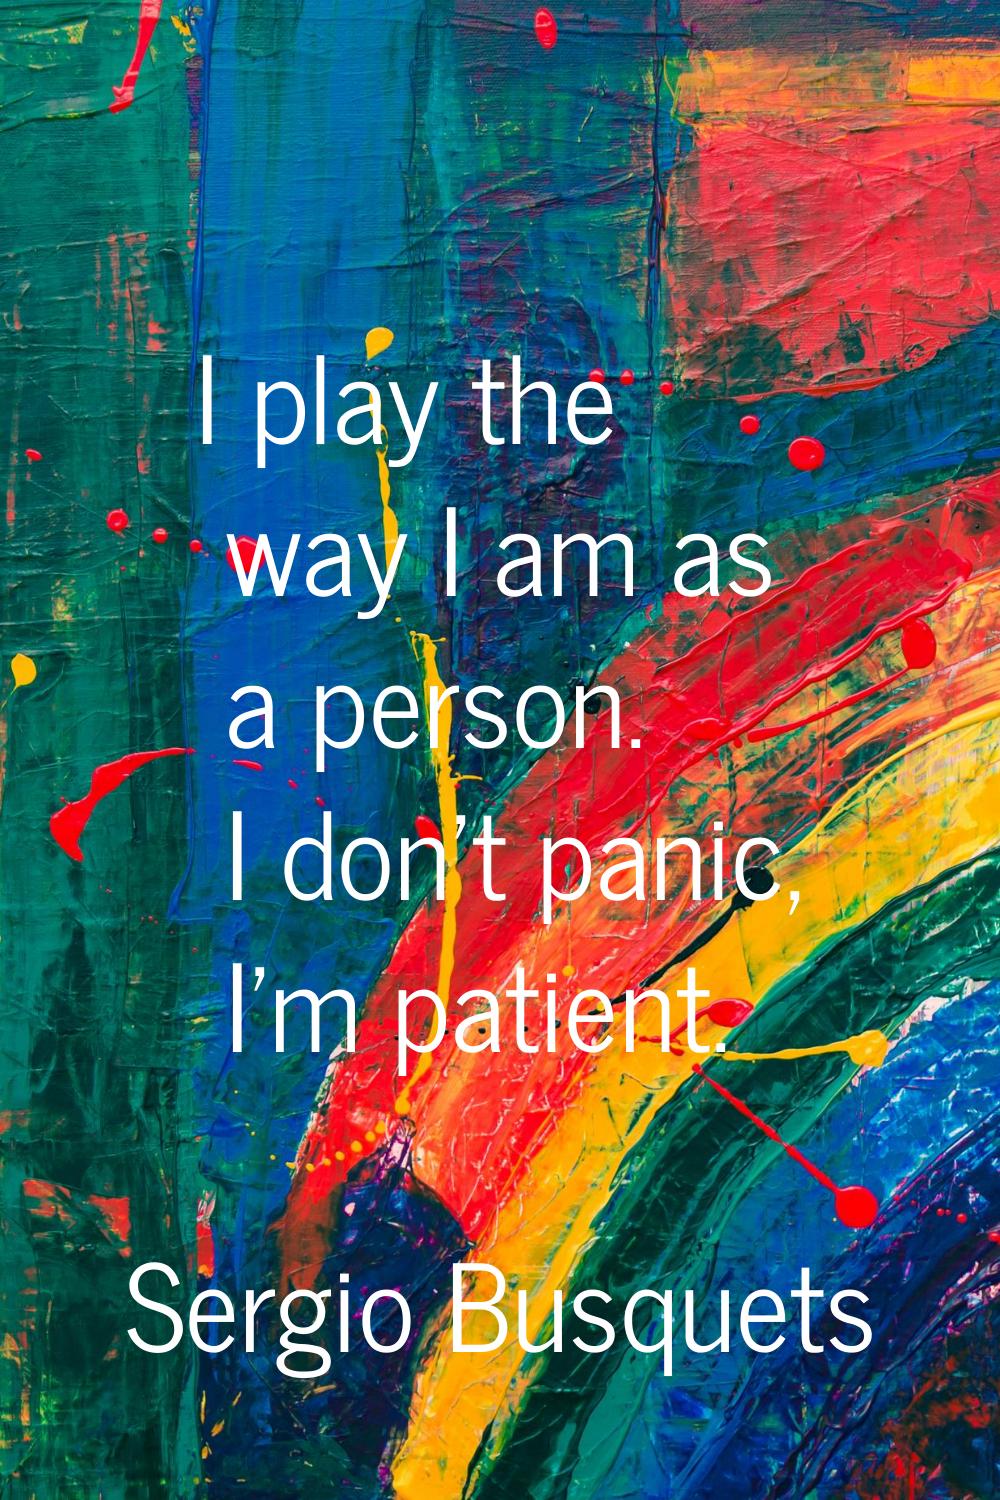 I play the way I am as a person. I don't panic, I'm patient.